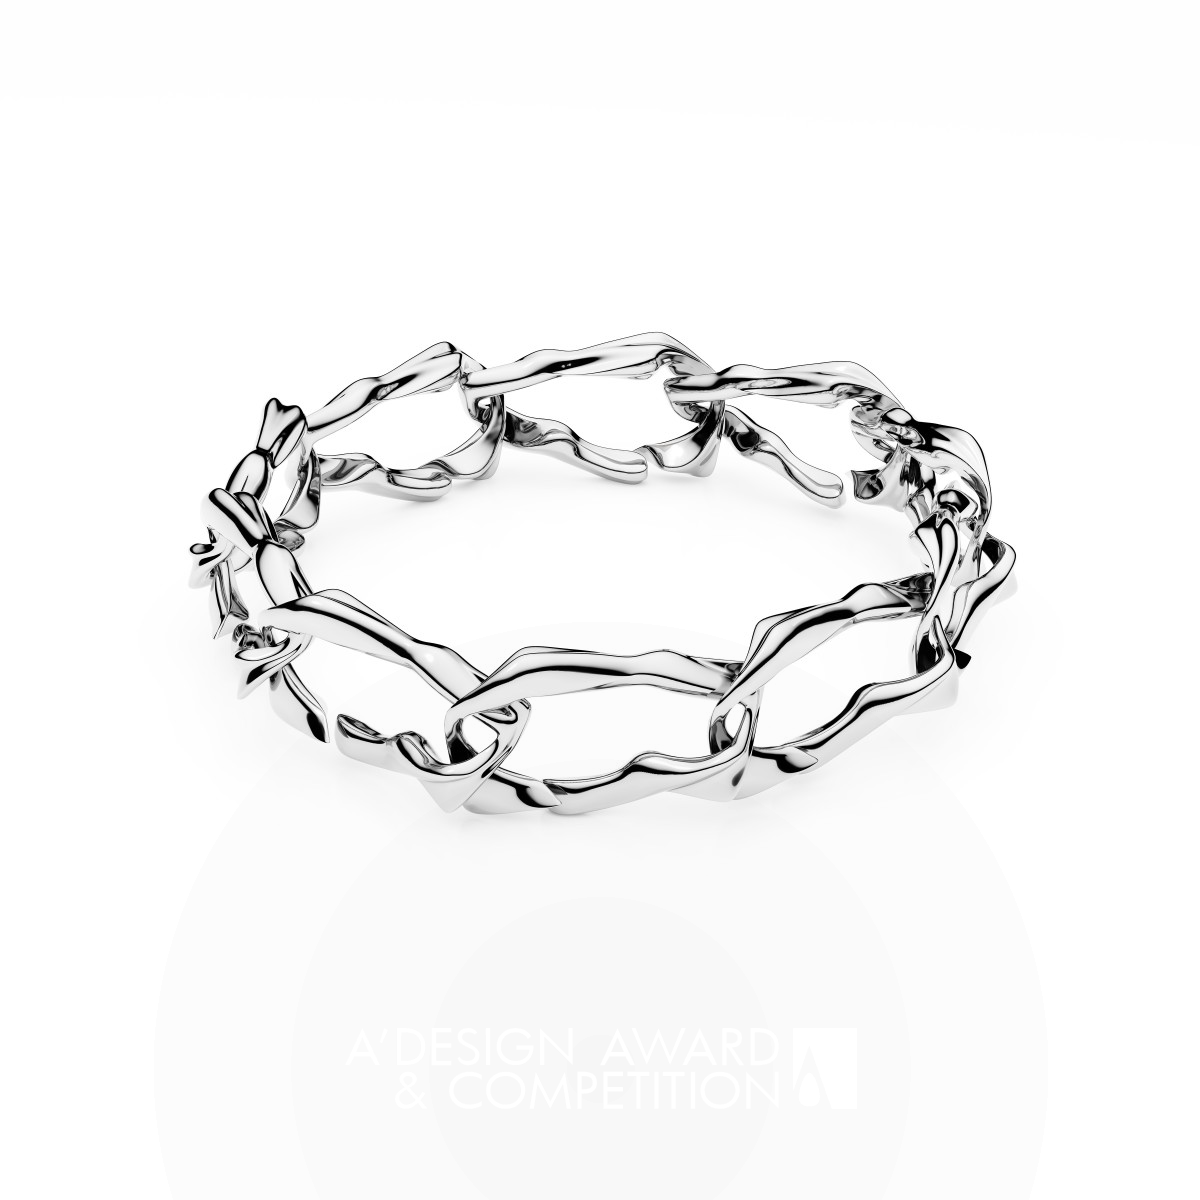 Dance Bracelet by Maciej Kasprzak Iron Jewelry Design Award Winner 2024 